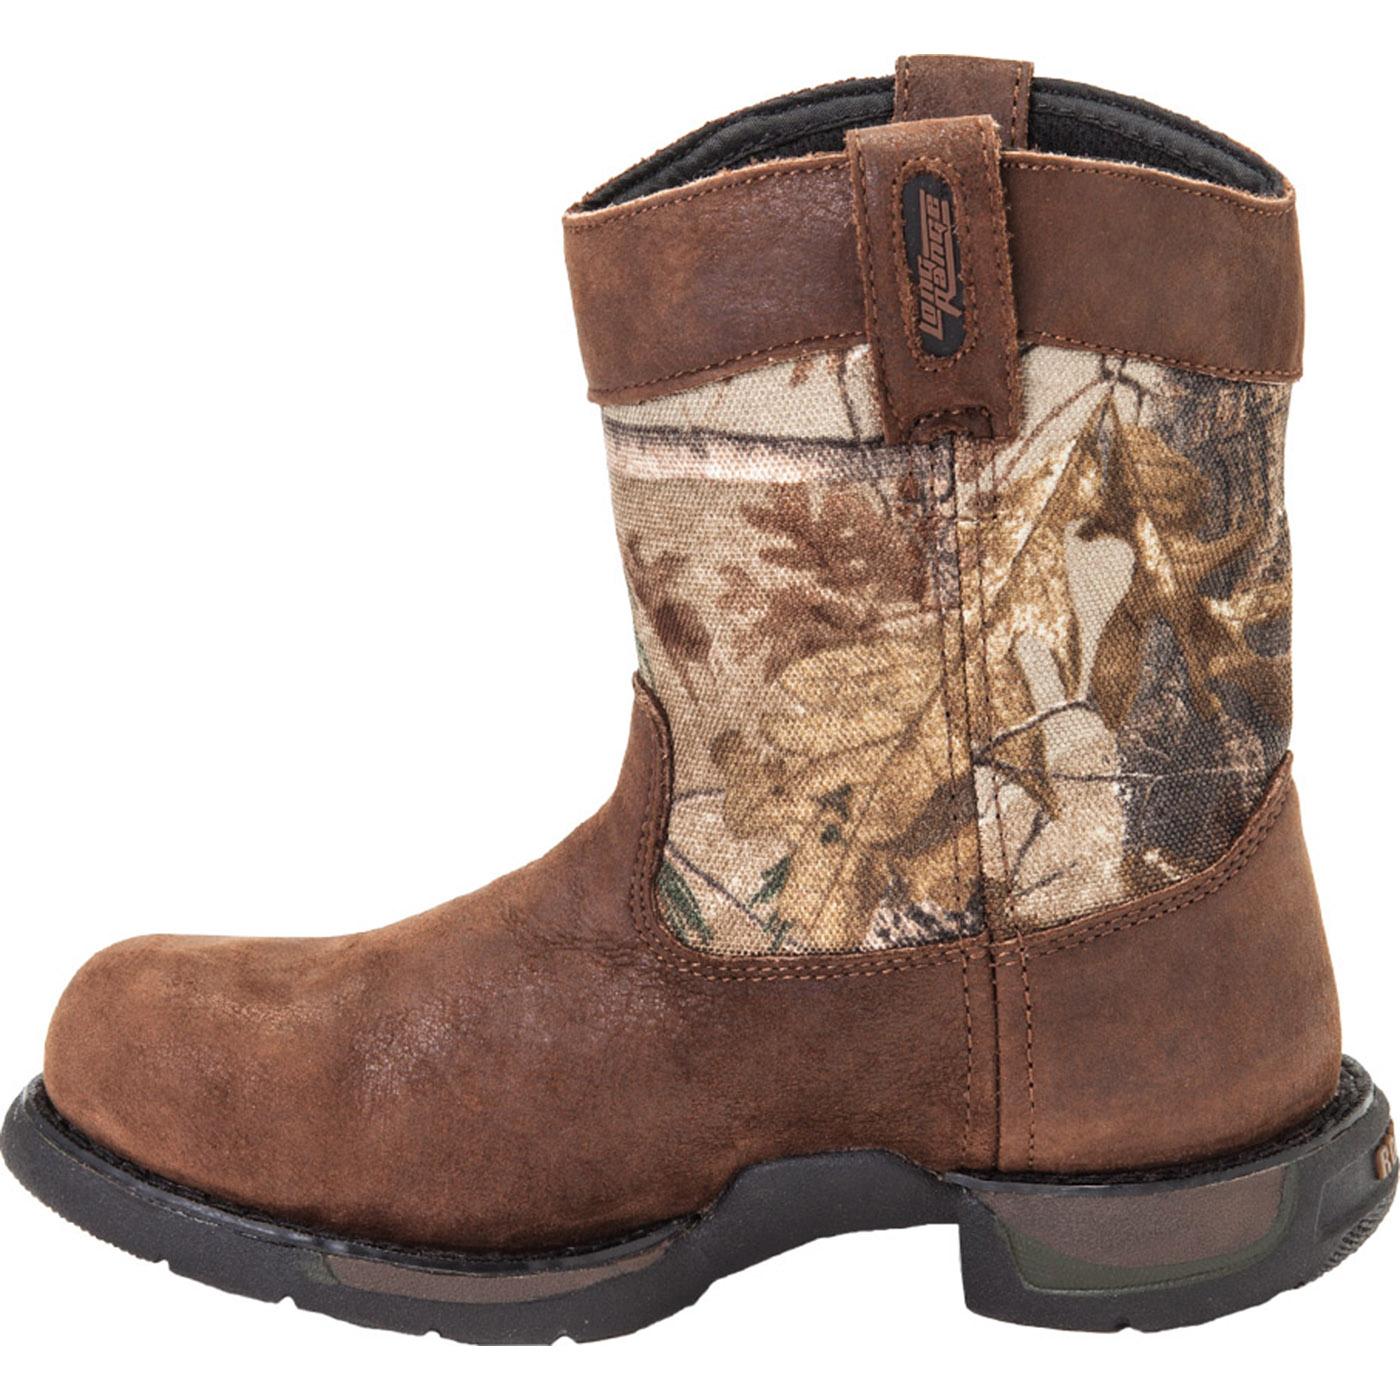 Kid's Footwear: Rocky Long Range Waterproof Leather Boots - Style #3696